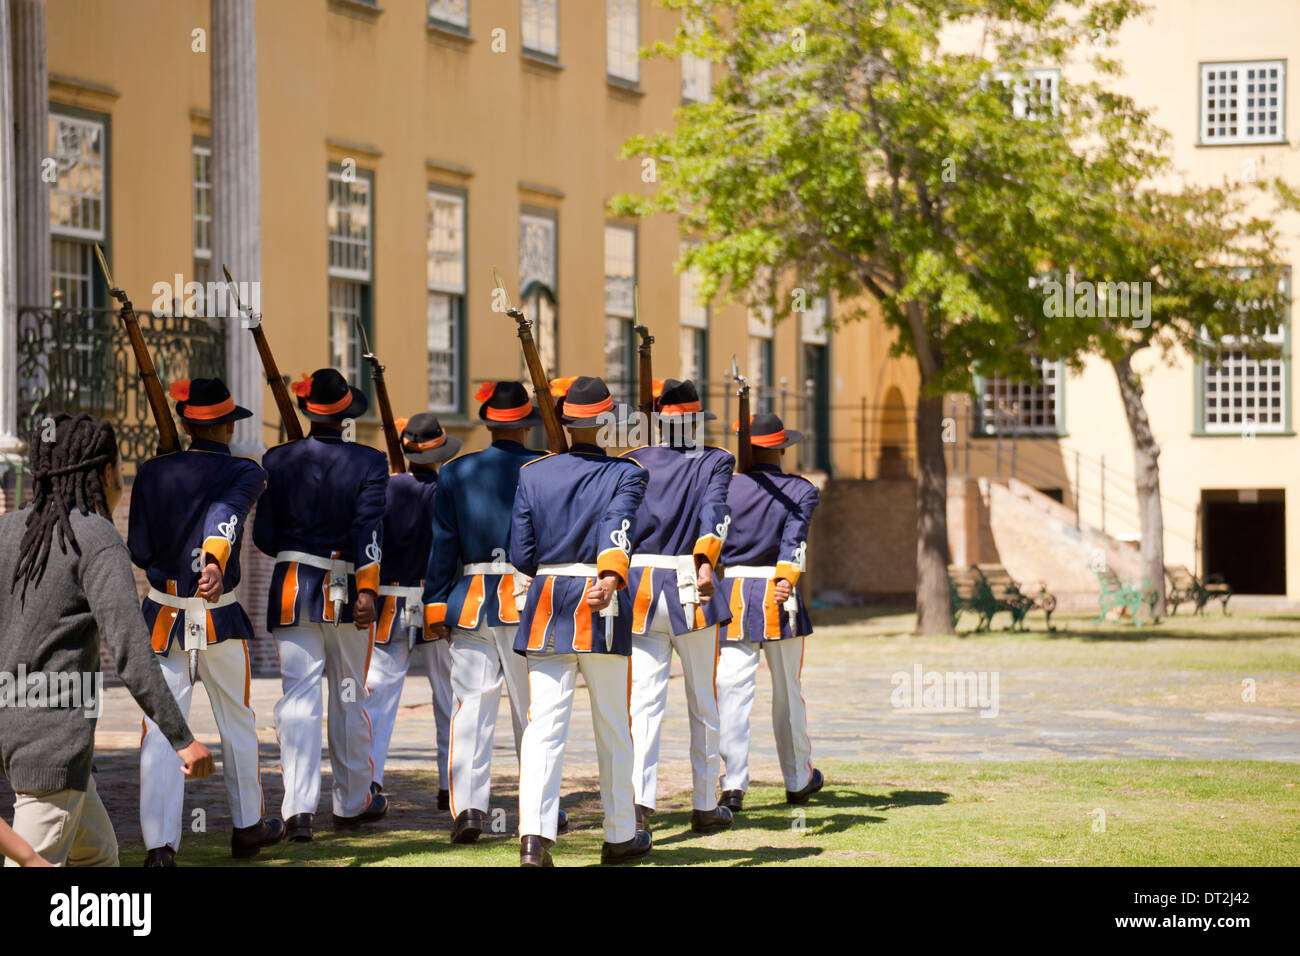 Le protezioni in uniforme storica durante la cerimonia della chiave presso il Castello di Buona Speranza, Cape Town, Western Cape, Sud Africa Foto Stock